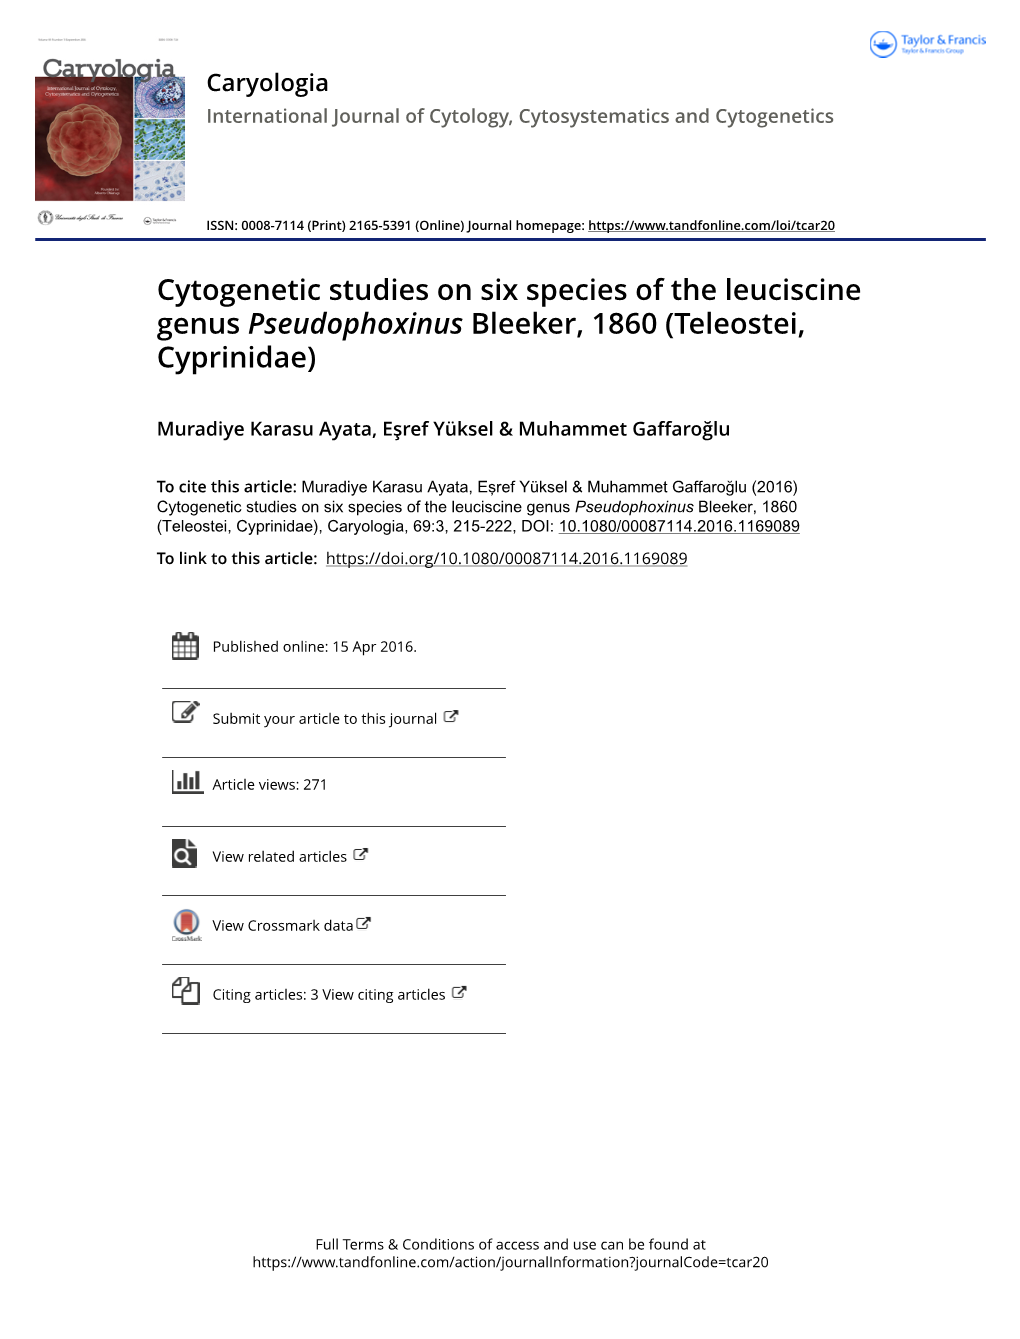 Cytogenetic Studies on Six Species of the Leuciscine Genus Pseudophoxinus Bleeker, 1860 (Teleostei, Cyprinidae)